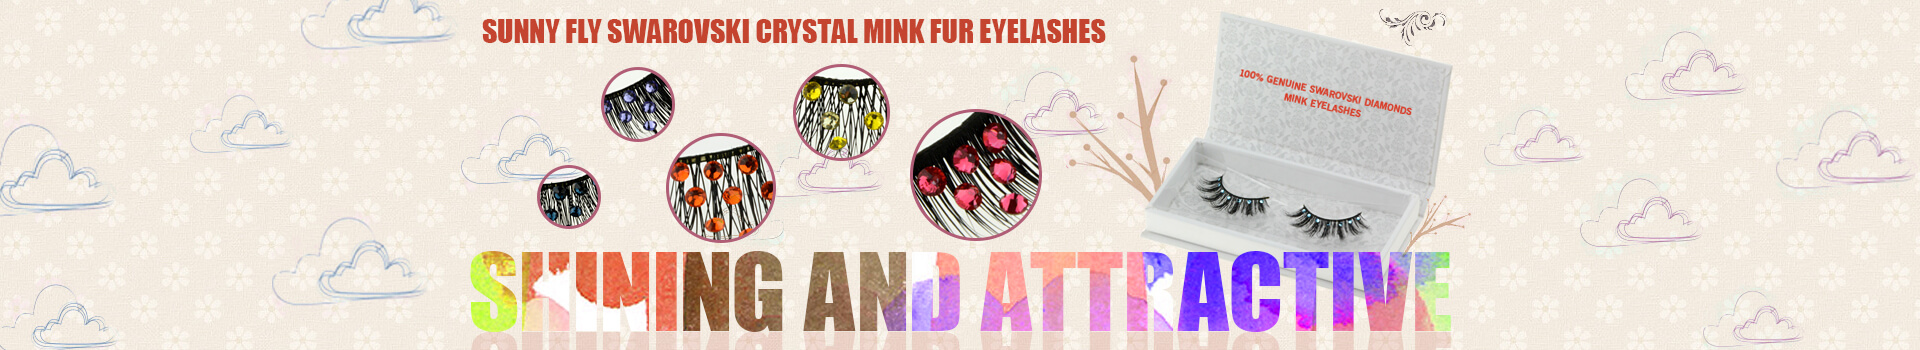 Swarovski Crystal Mink Fur Eyelashes MS15